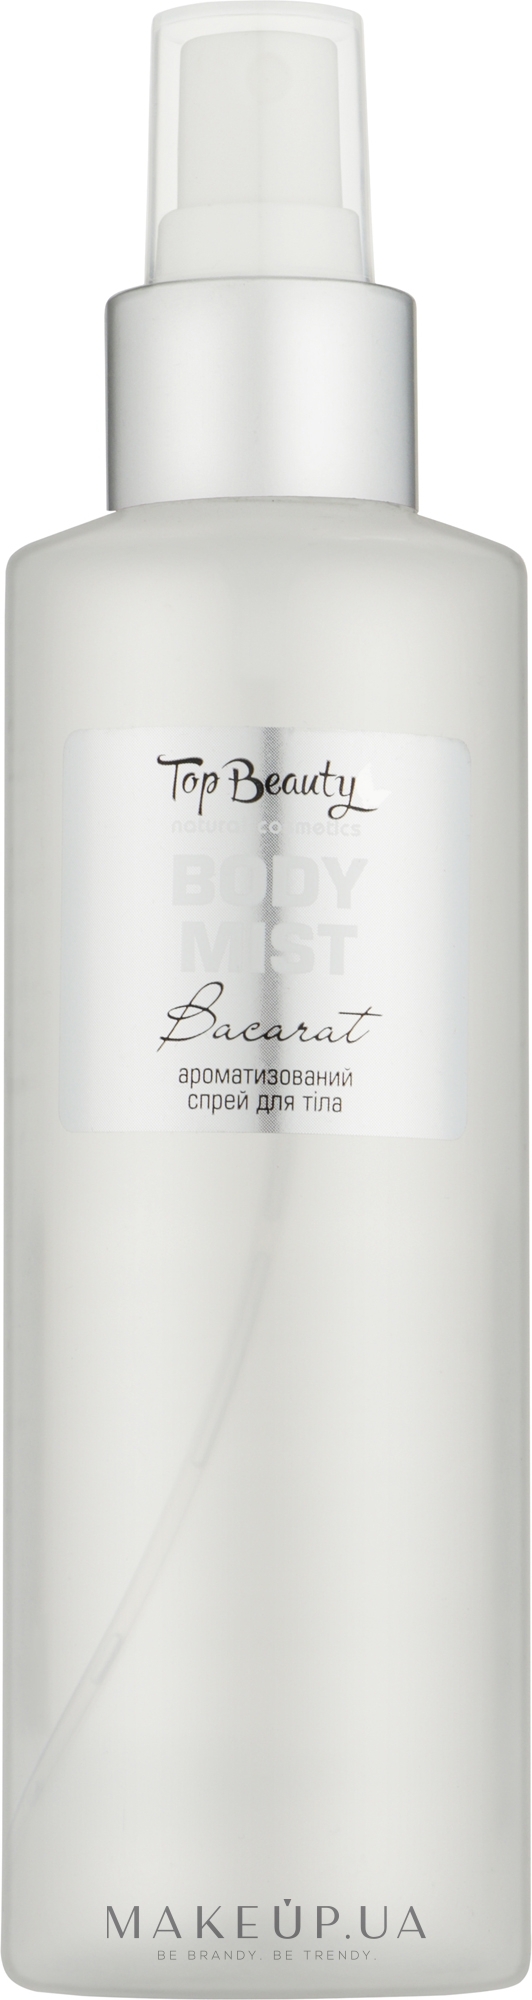 Парфюмированный мист для тела "Bacarat" - Top Beauty Body Mist Chanel — фото 200ml